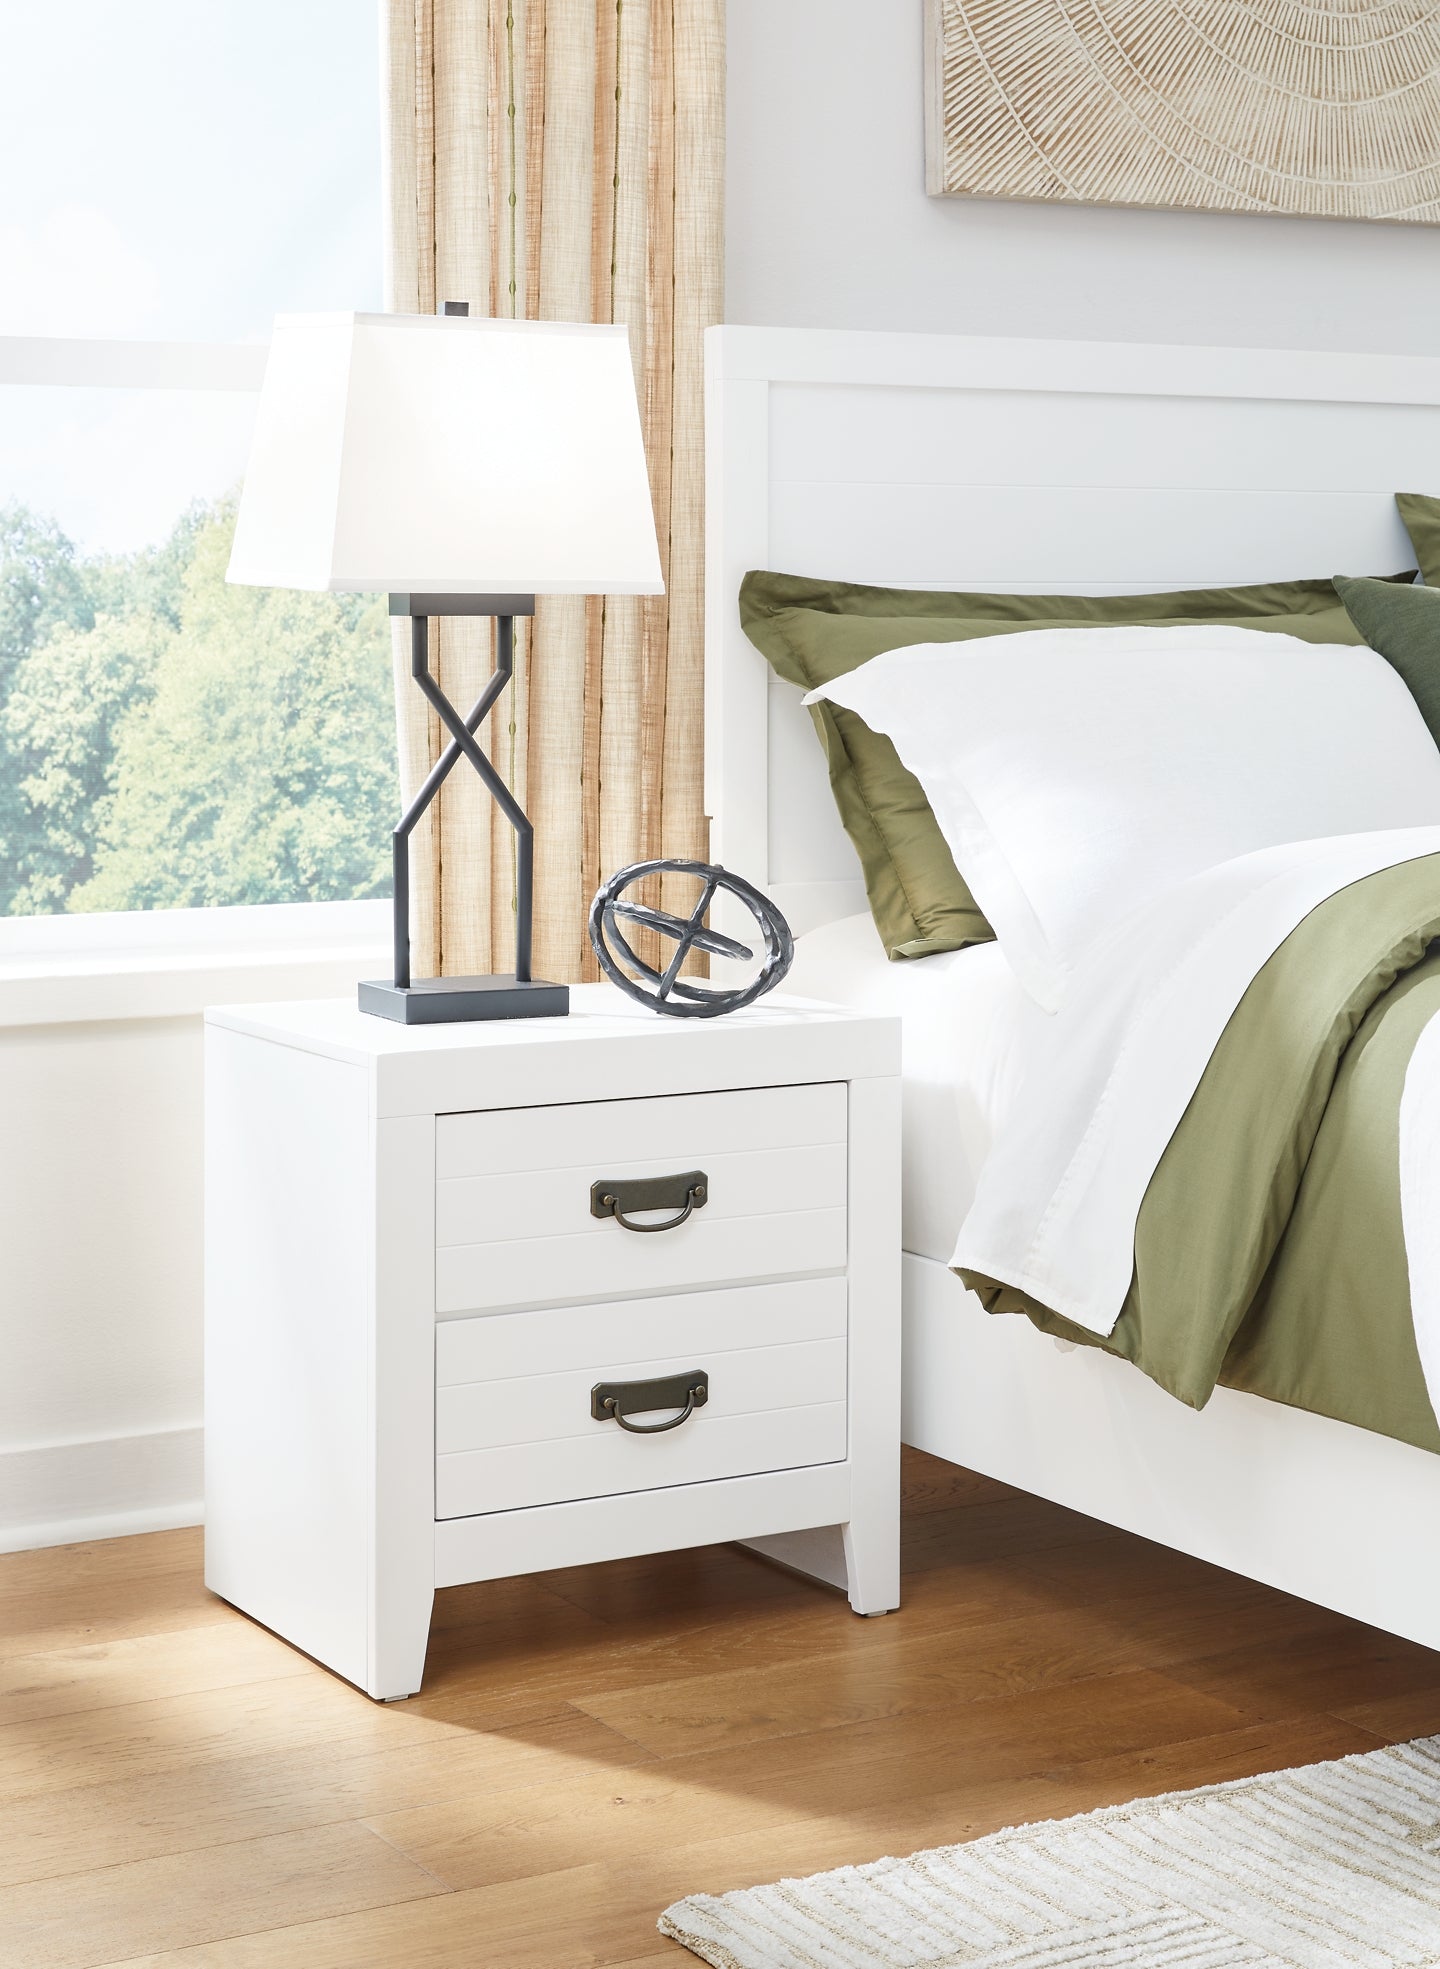 Binterglen Queen Panel Bed with Dresser and Nightstand